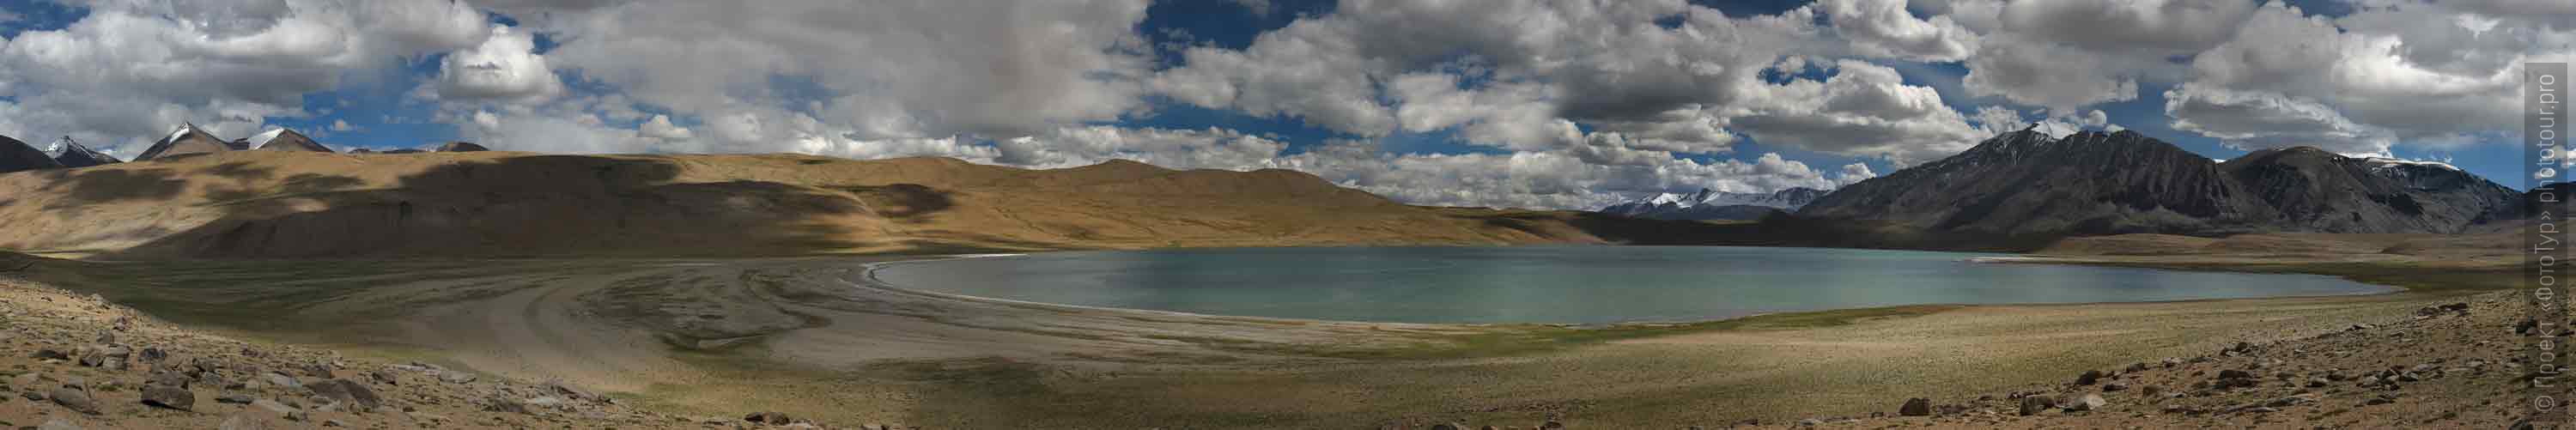 Kagyar Tso Lake. Tour Tibet Lakeside Advertising: Alpine lakes, geyser valley, Lamayuru, Colored Mountains, 01 - 10.09. 2022 year.